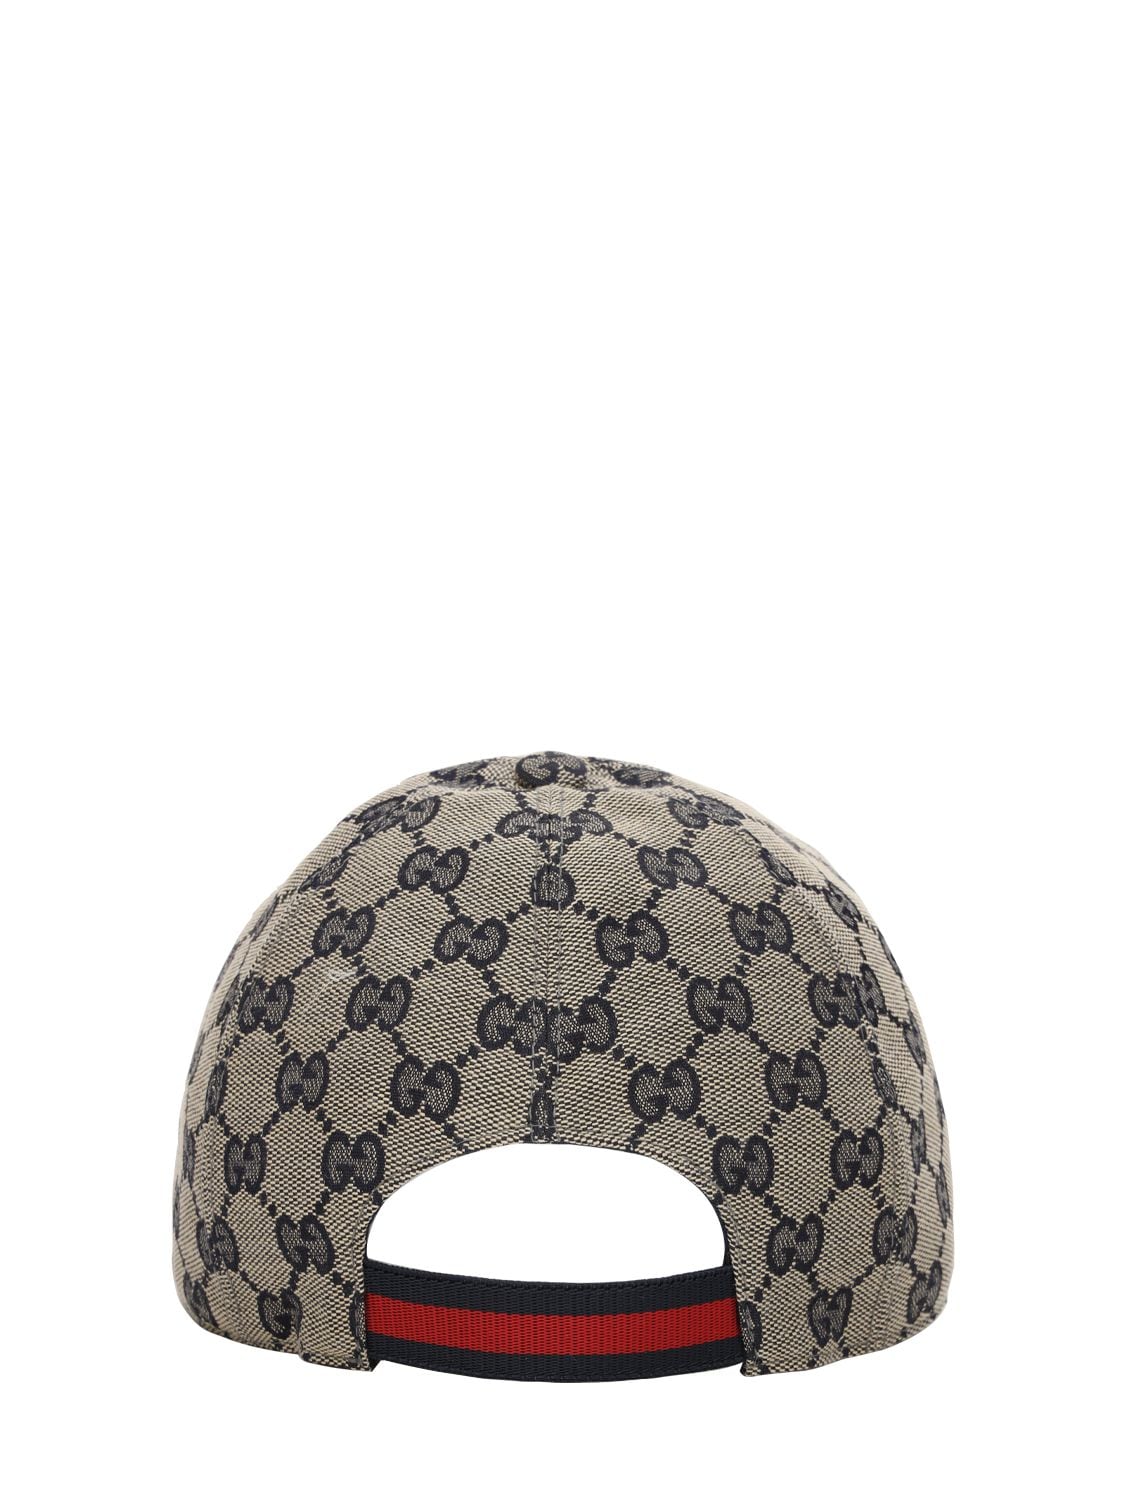 Shop Gucci Gg Supreme Cotton Canvas Trucker Hat In Beige,blue